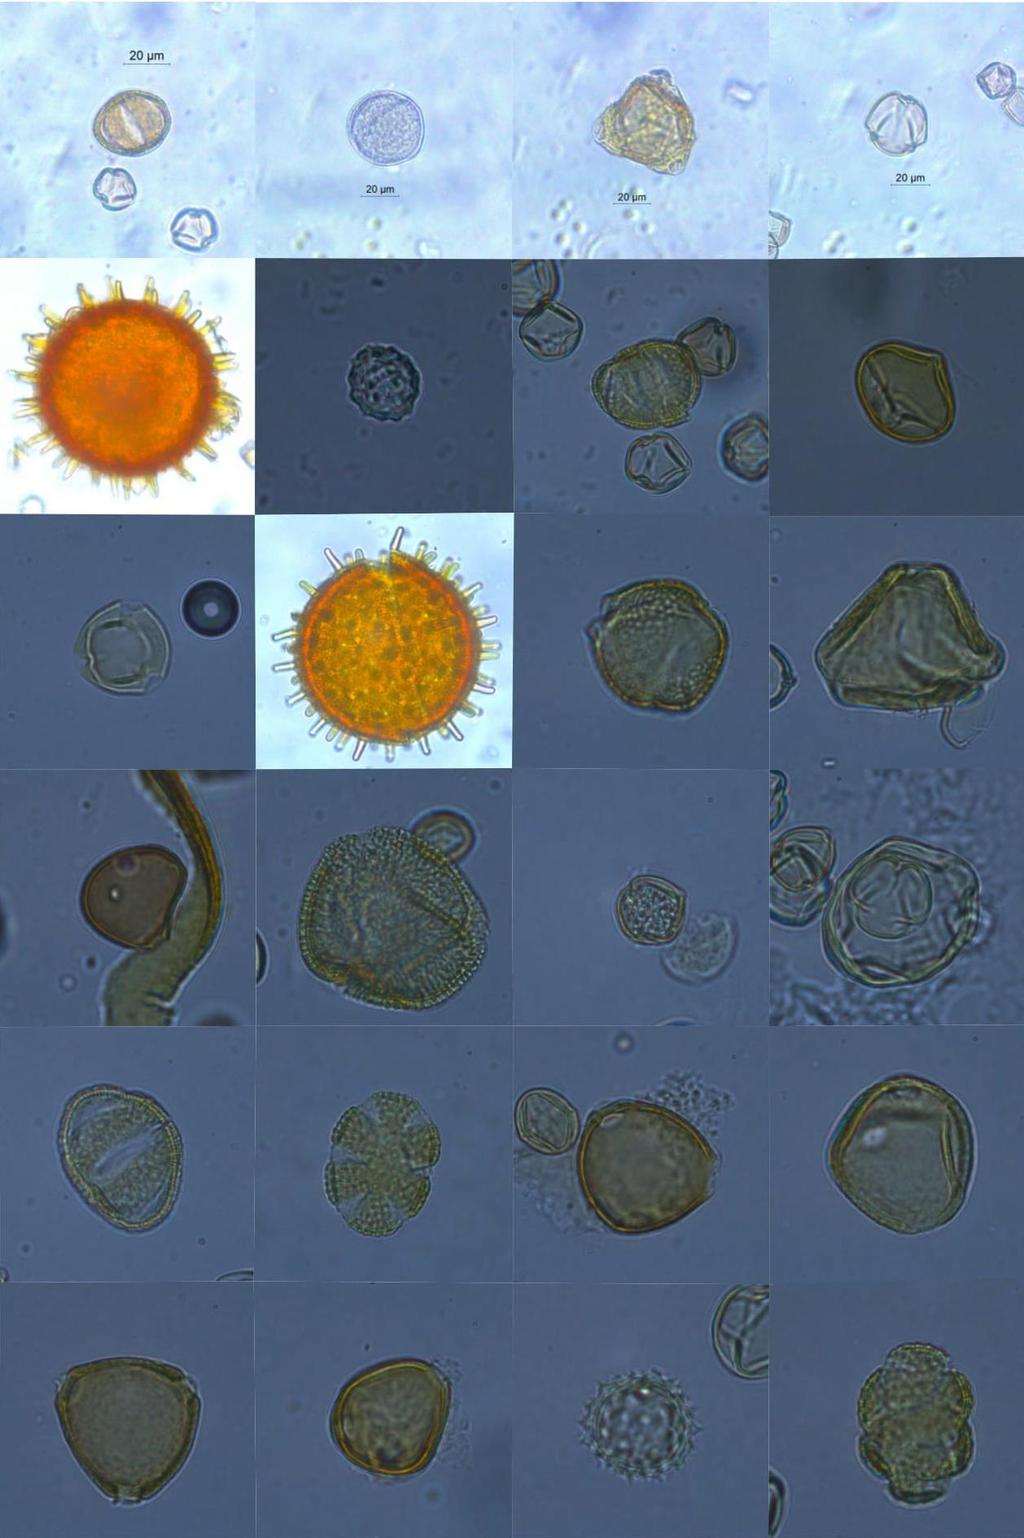 Apêndice III Fotomicrografias dos tipos polínicos encontrados nas amostras